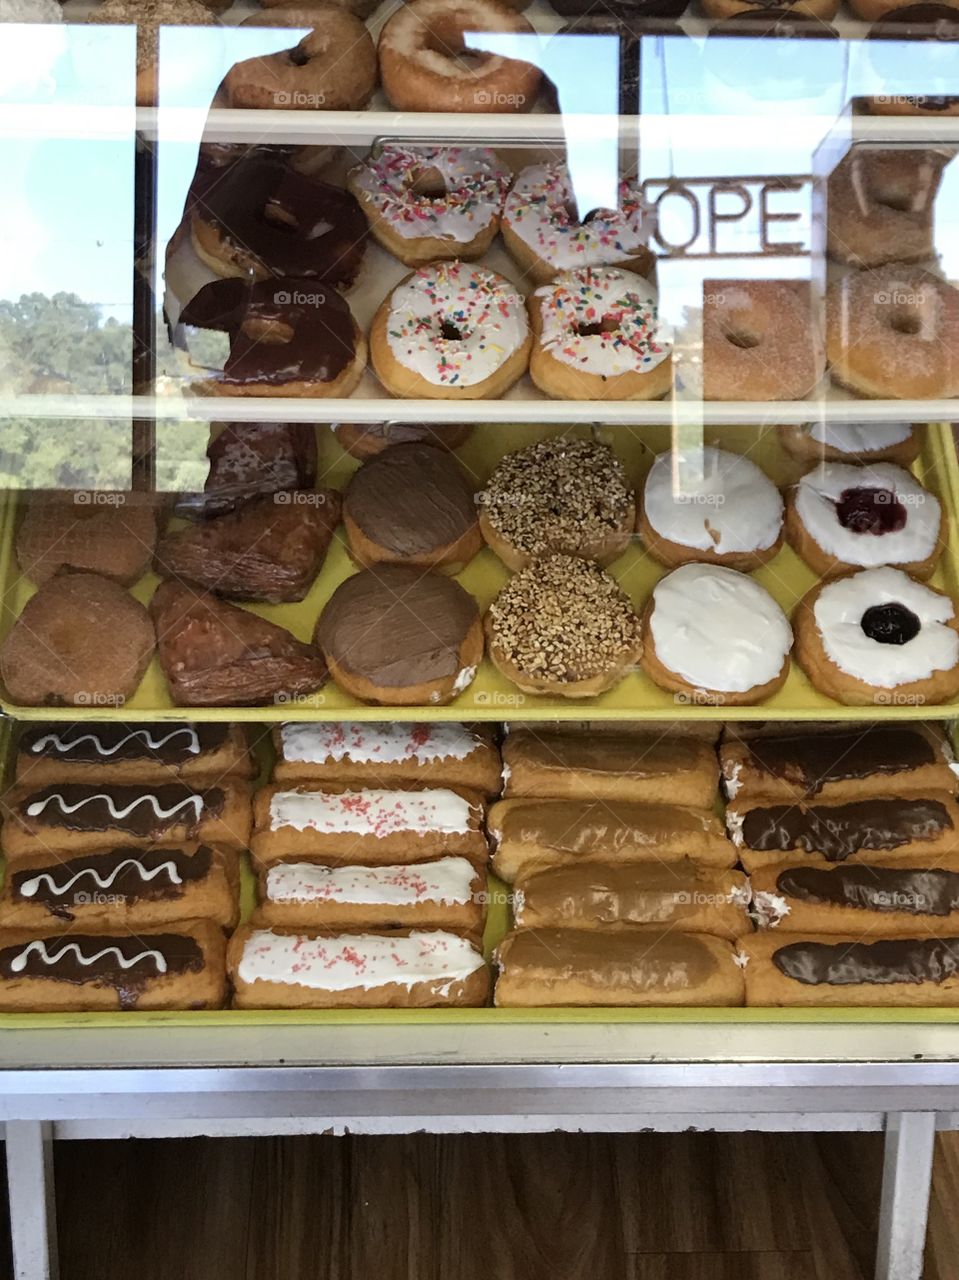 Donuts at a donut shop